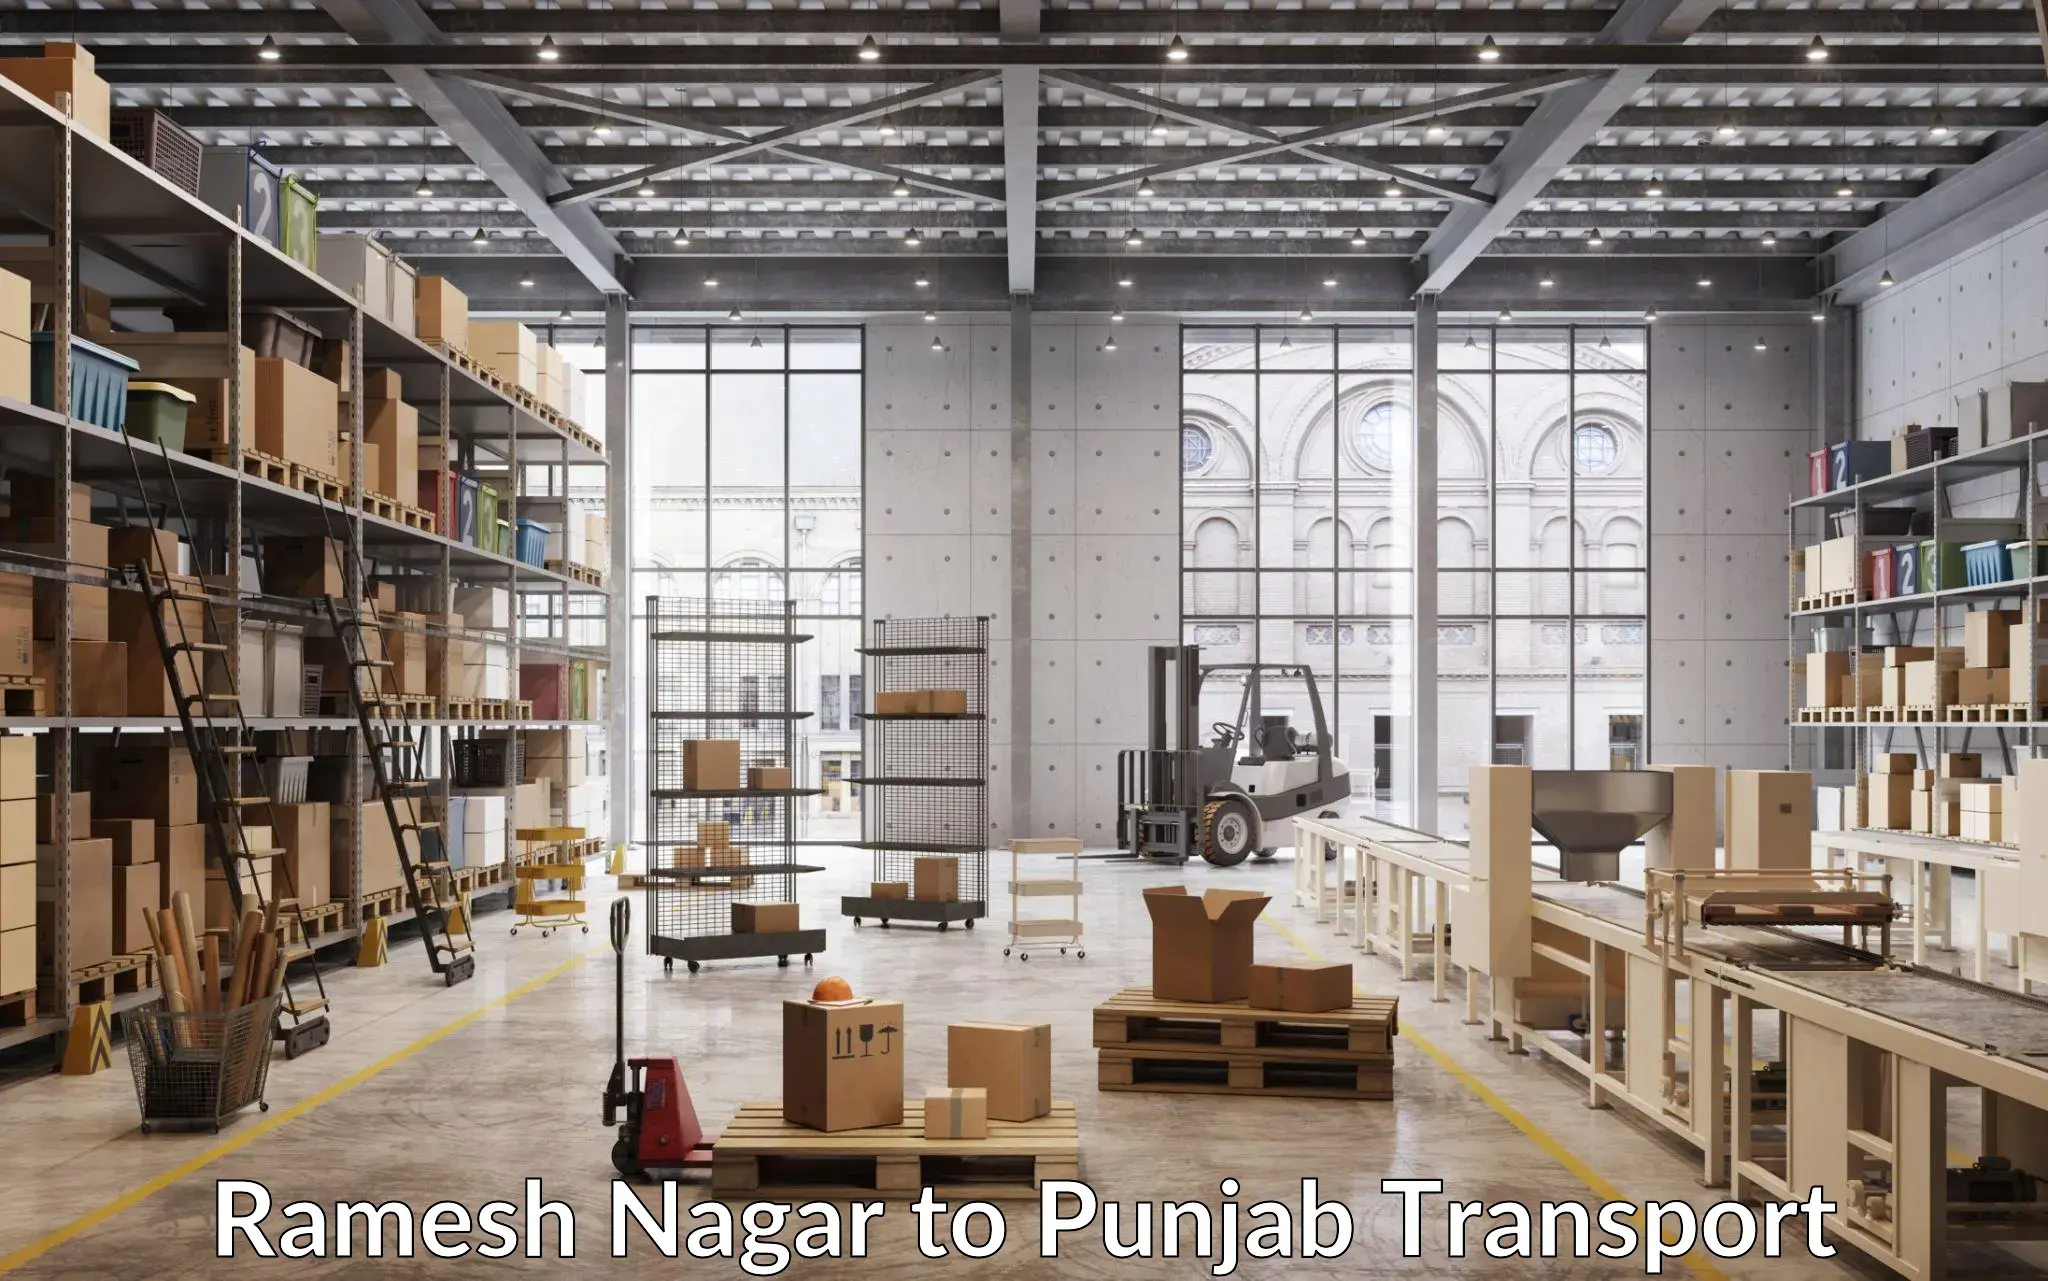 Air freight transport services Ramesh Nagar to Zirakpur